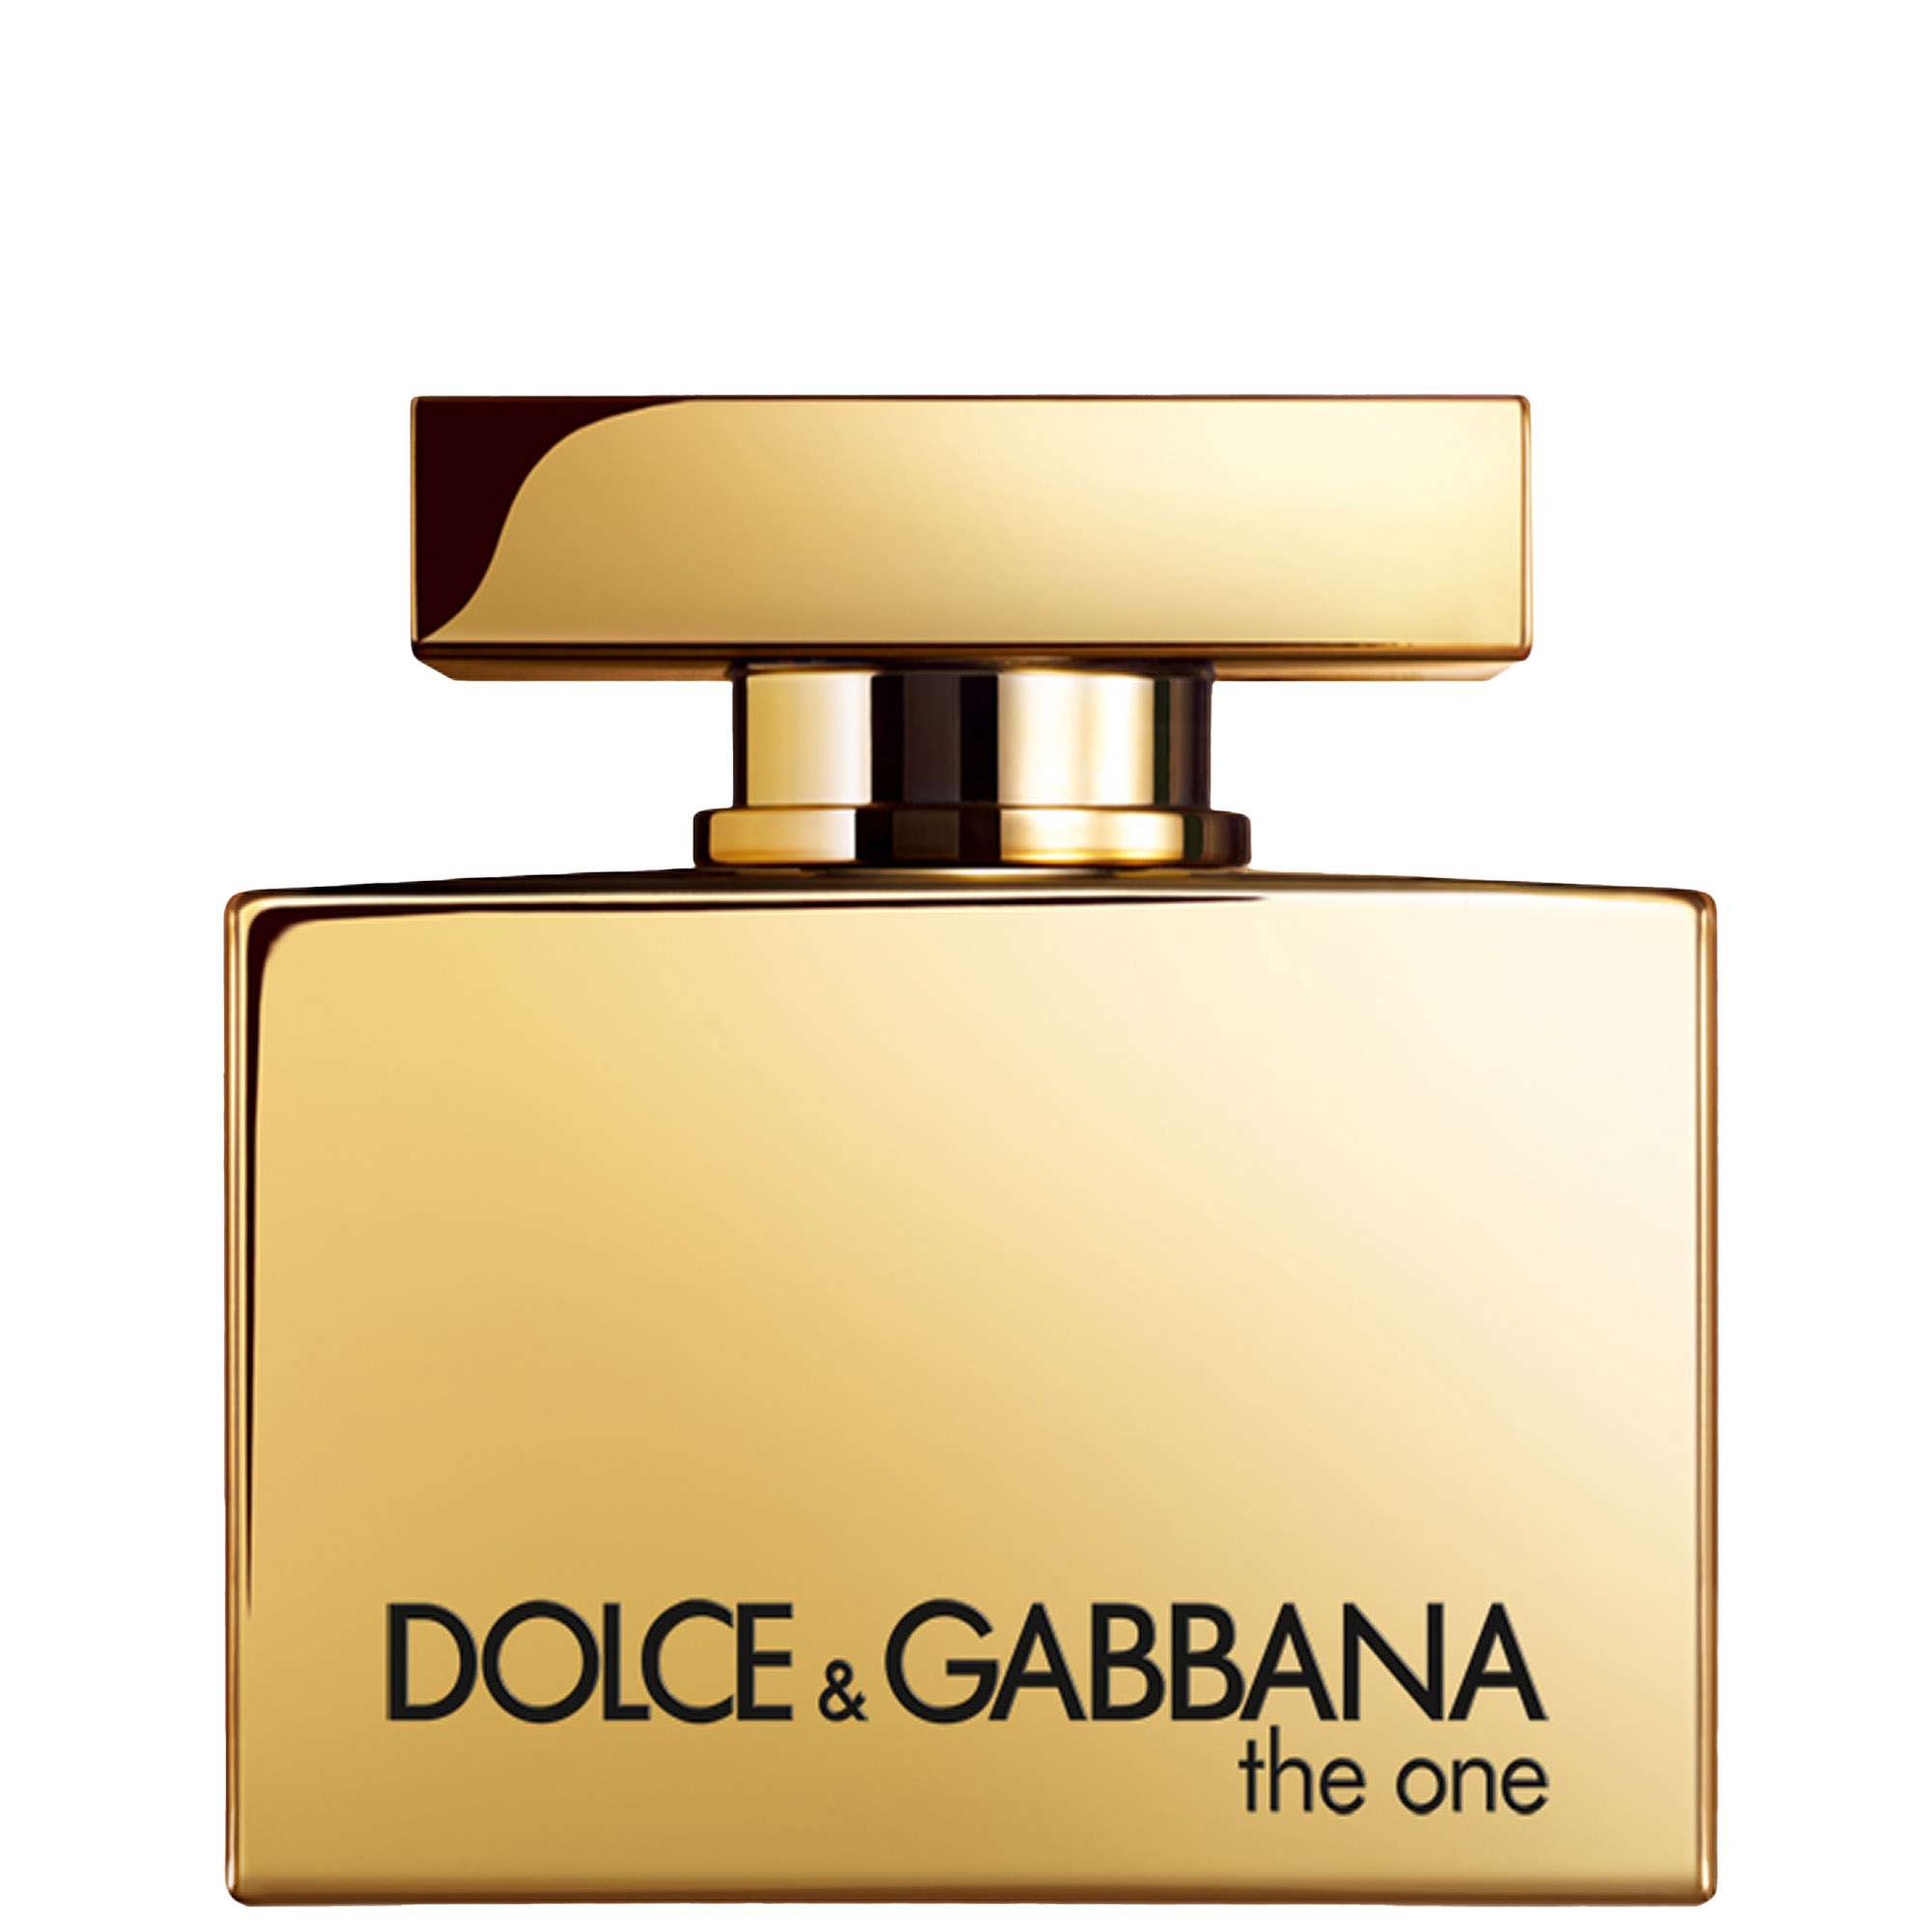 Photos - Women's Fragrance D&G Dolce&Gabbana The One Gold Eau de Parfum Intense Spray 75ml 